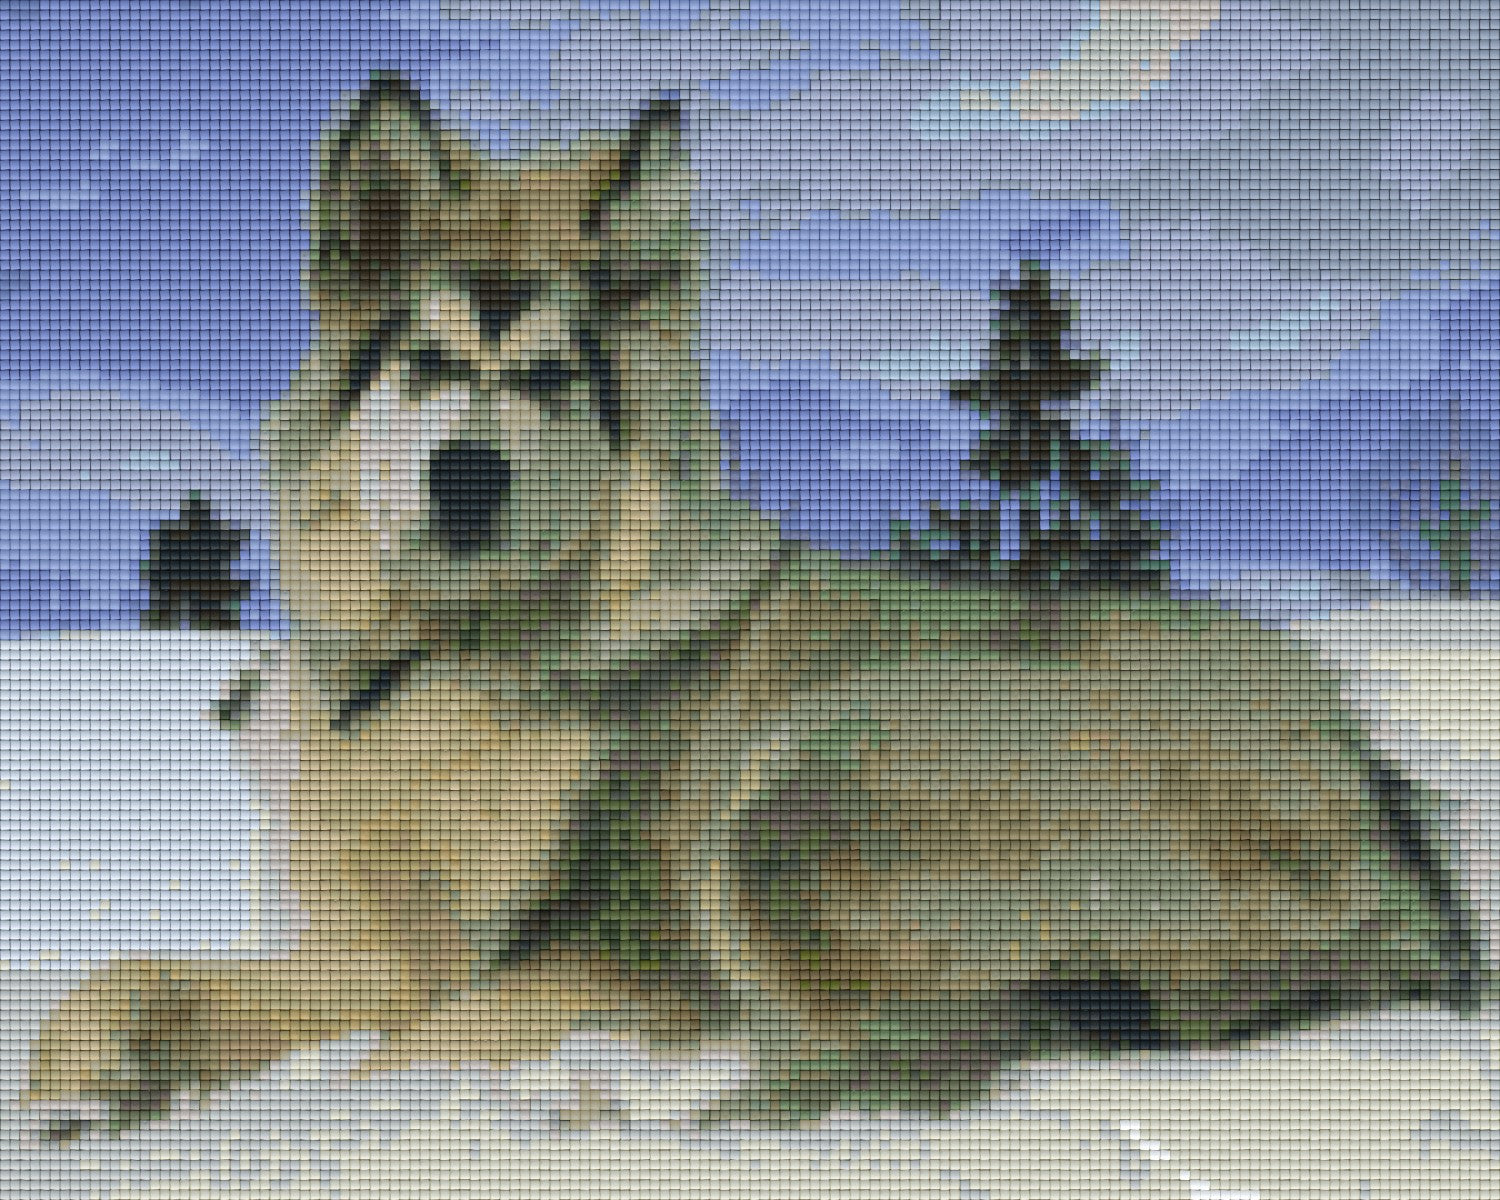 Pixelhobby Classic Set - Alaska Malamute Dog